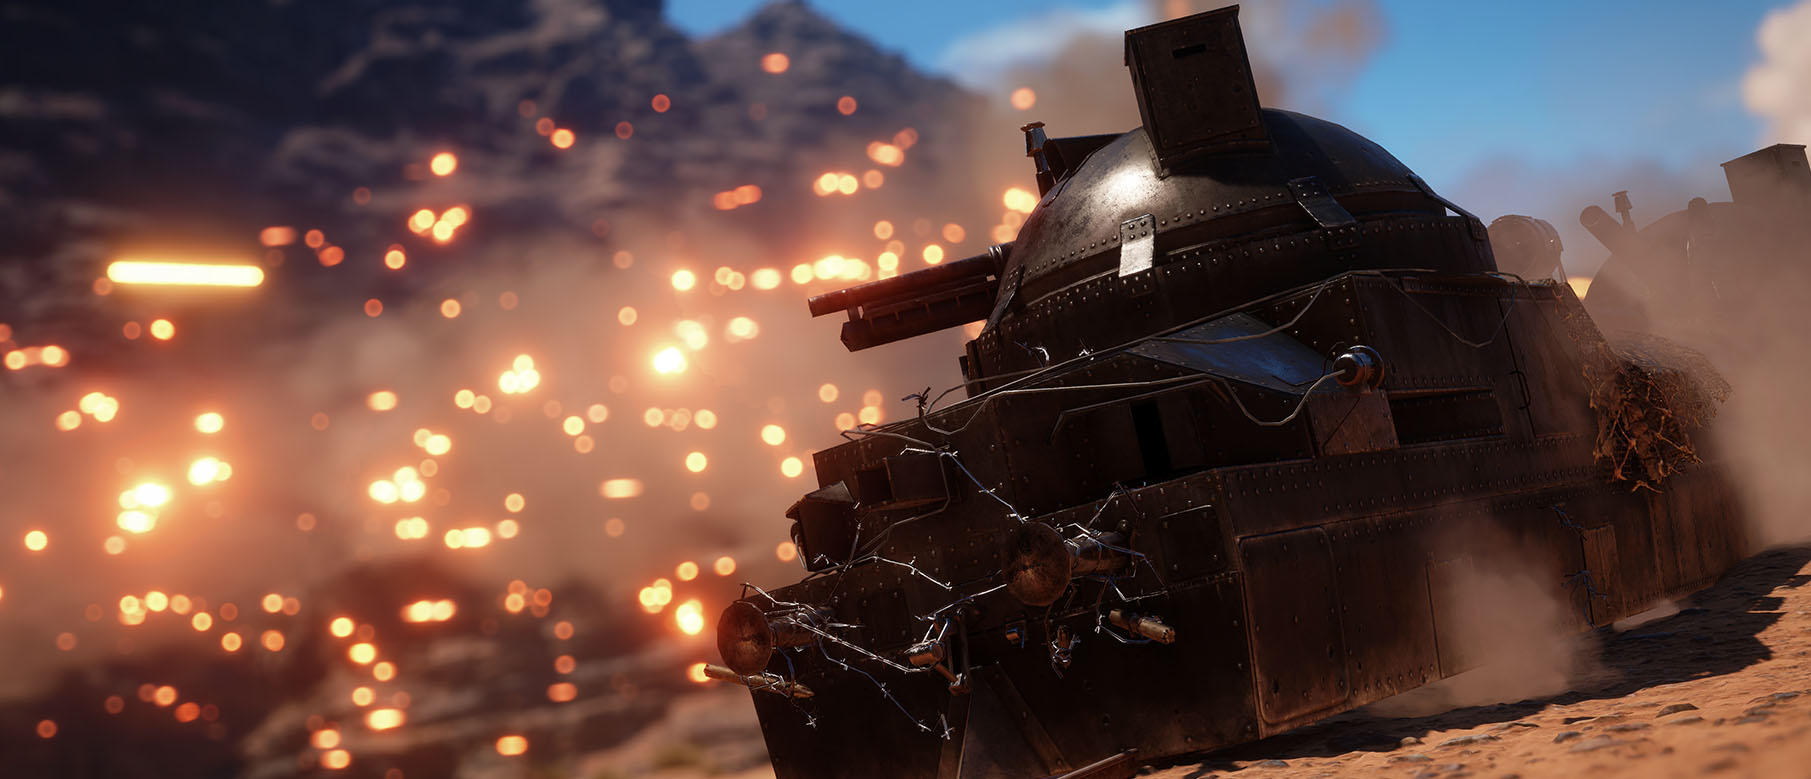 Изображение к Первая демонстрация AMD Ryzen в Battlefield 1, Sniper Elite 4 и Star Wars: Battlefront